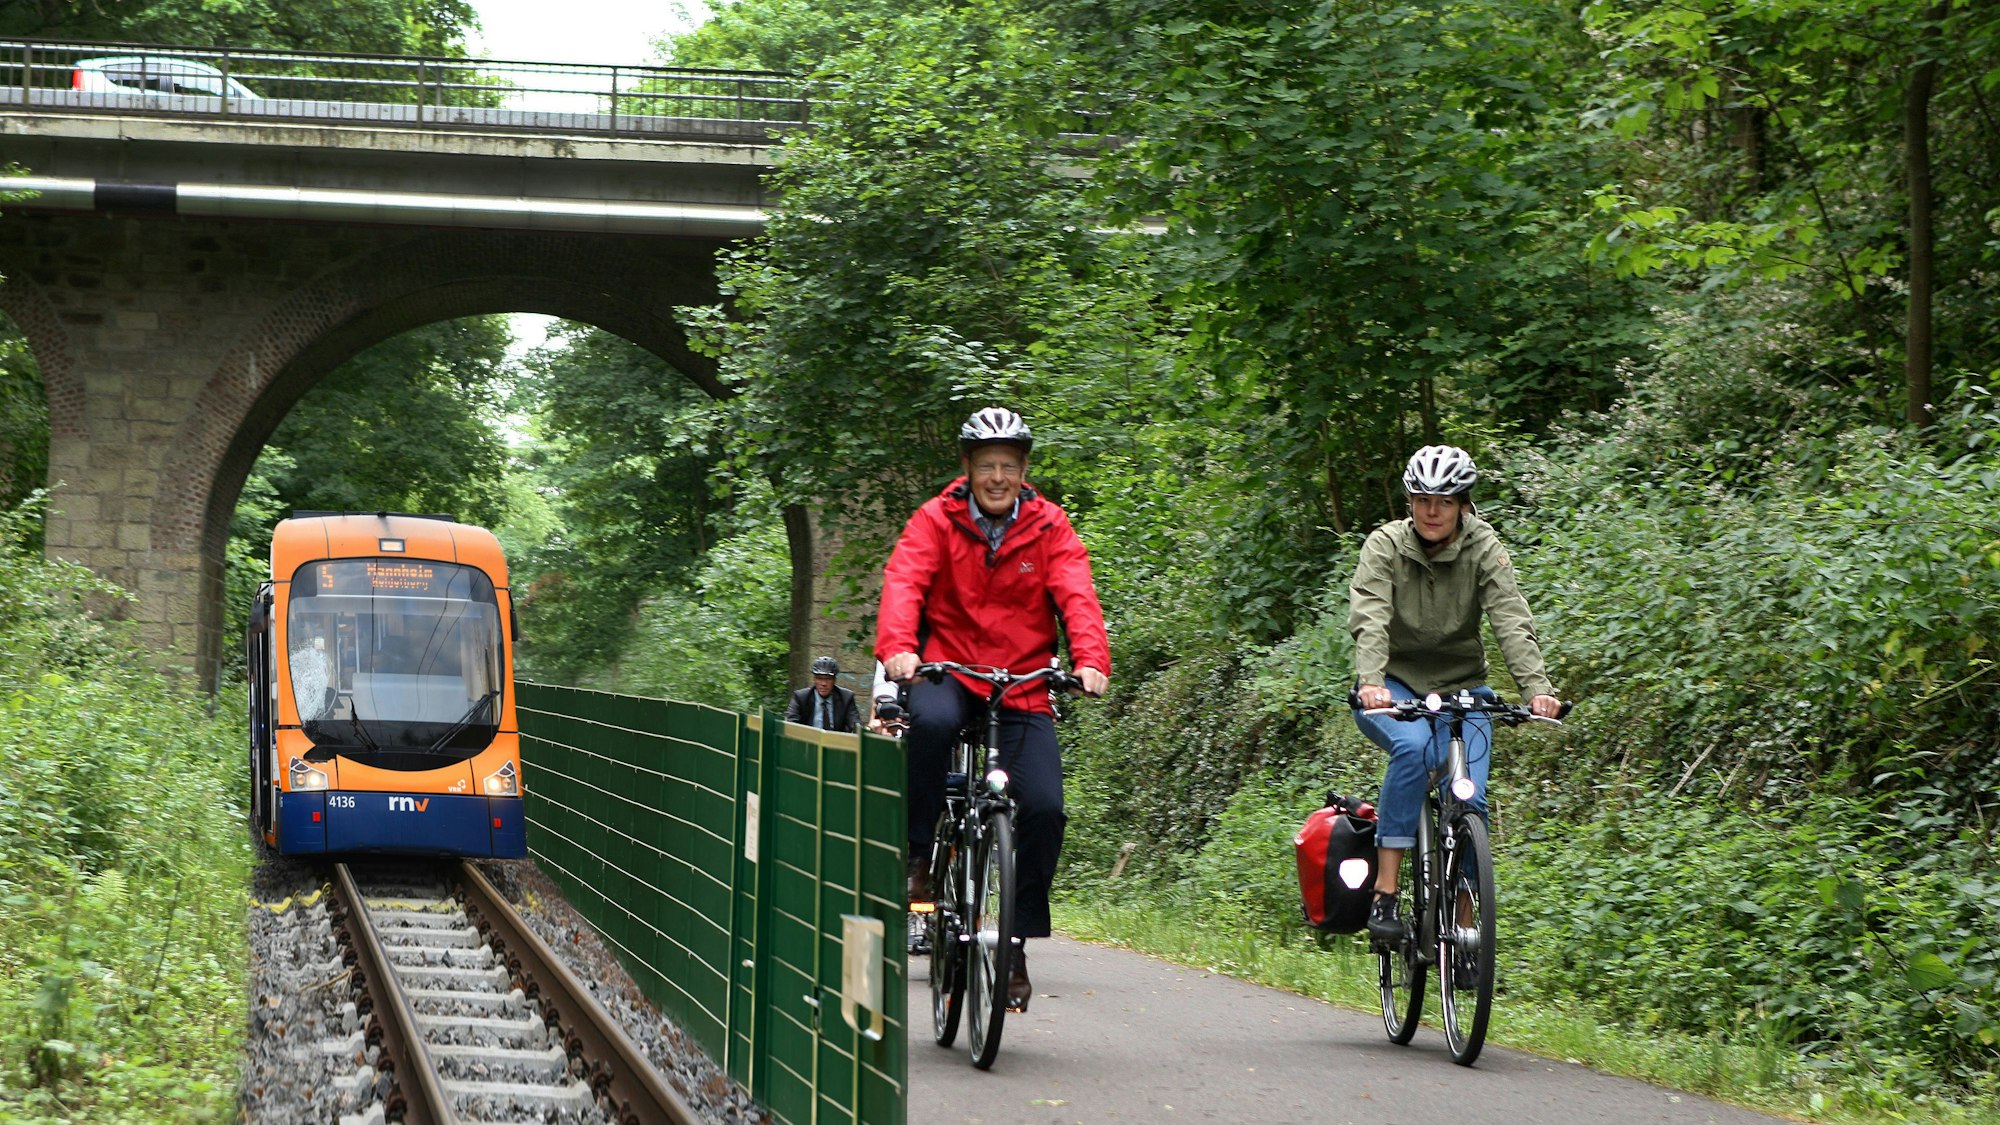 Zwei Fahrradfahrer fahren auf einem Rad-Gehweg auf einer ehemaligen Bahntrasse, daneben fährt – durch einen Zaun abgetrennt – eine Straßenbahn.